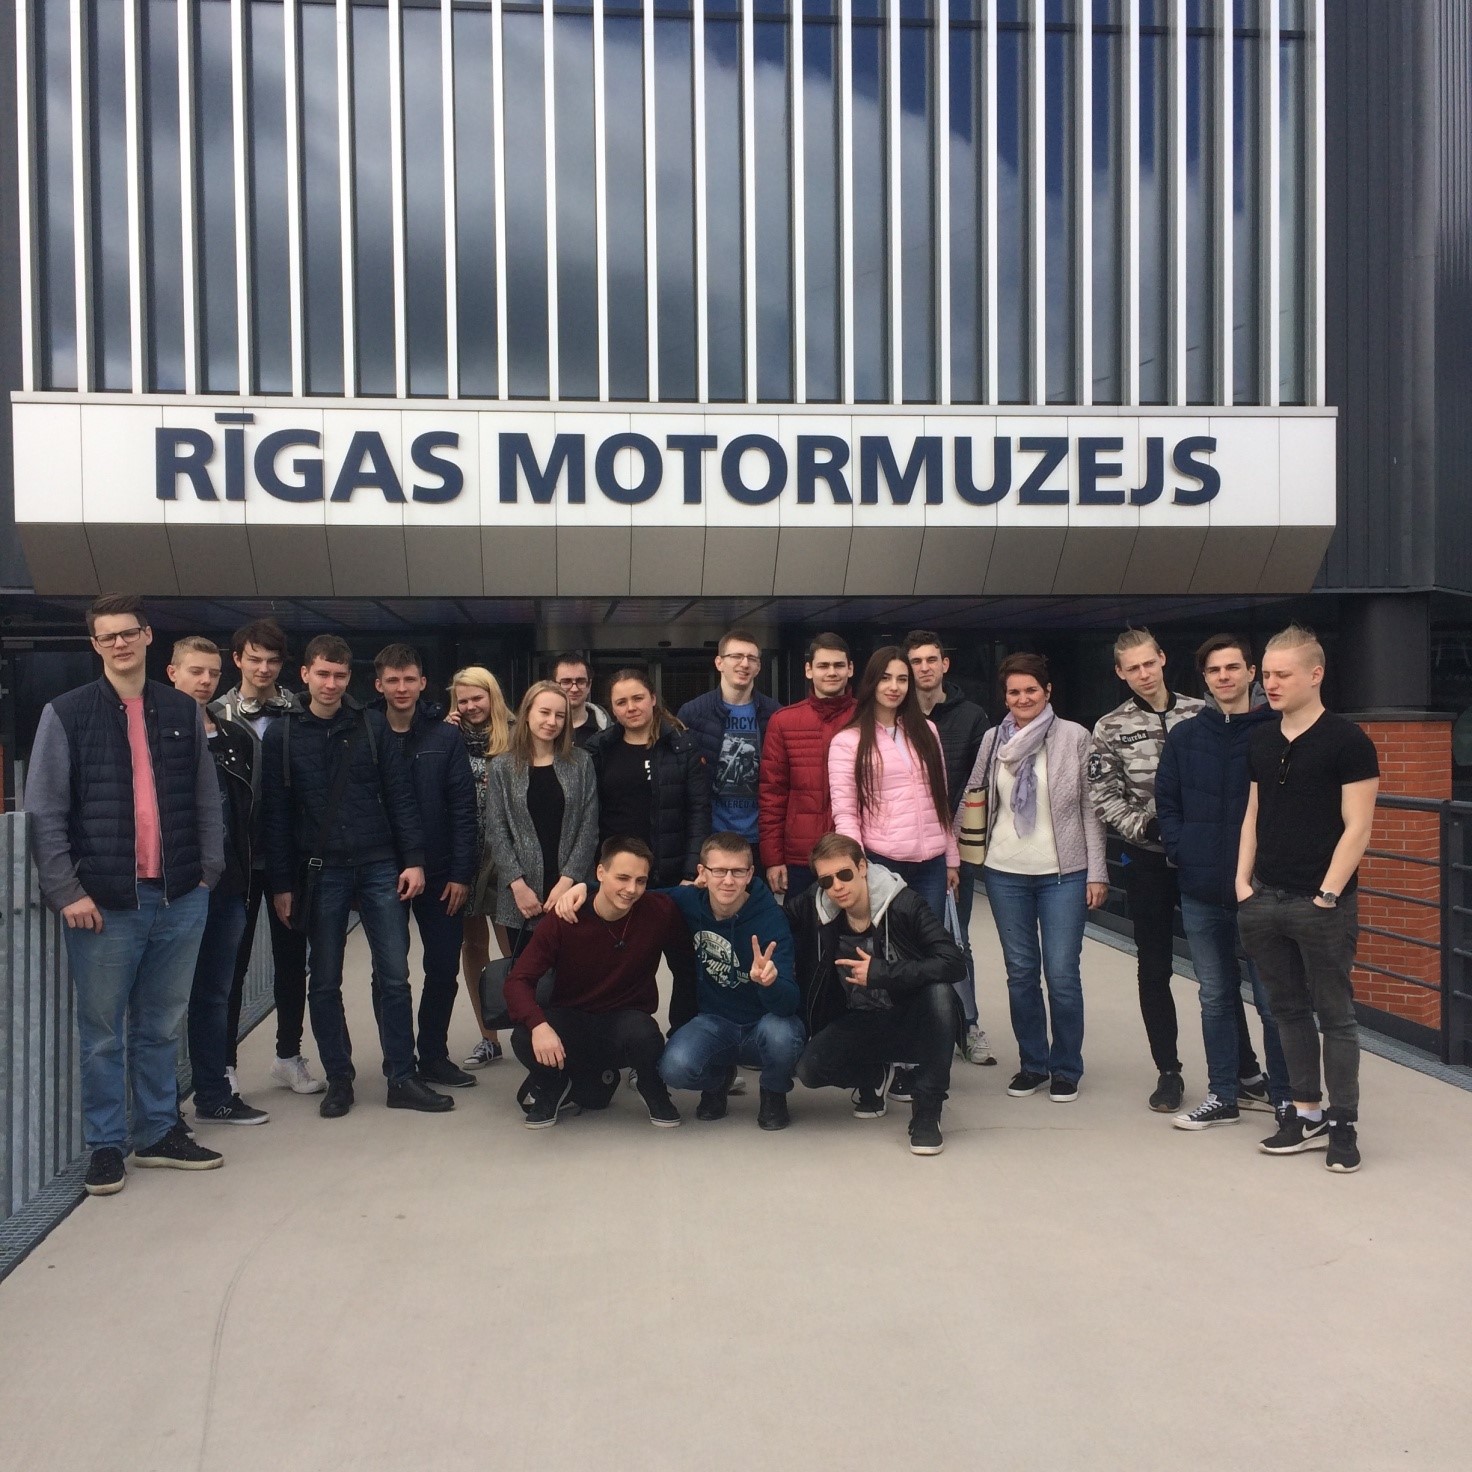 Skolēni dodas uz Rīgas motormuzeju